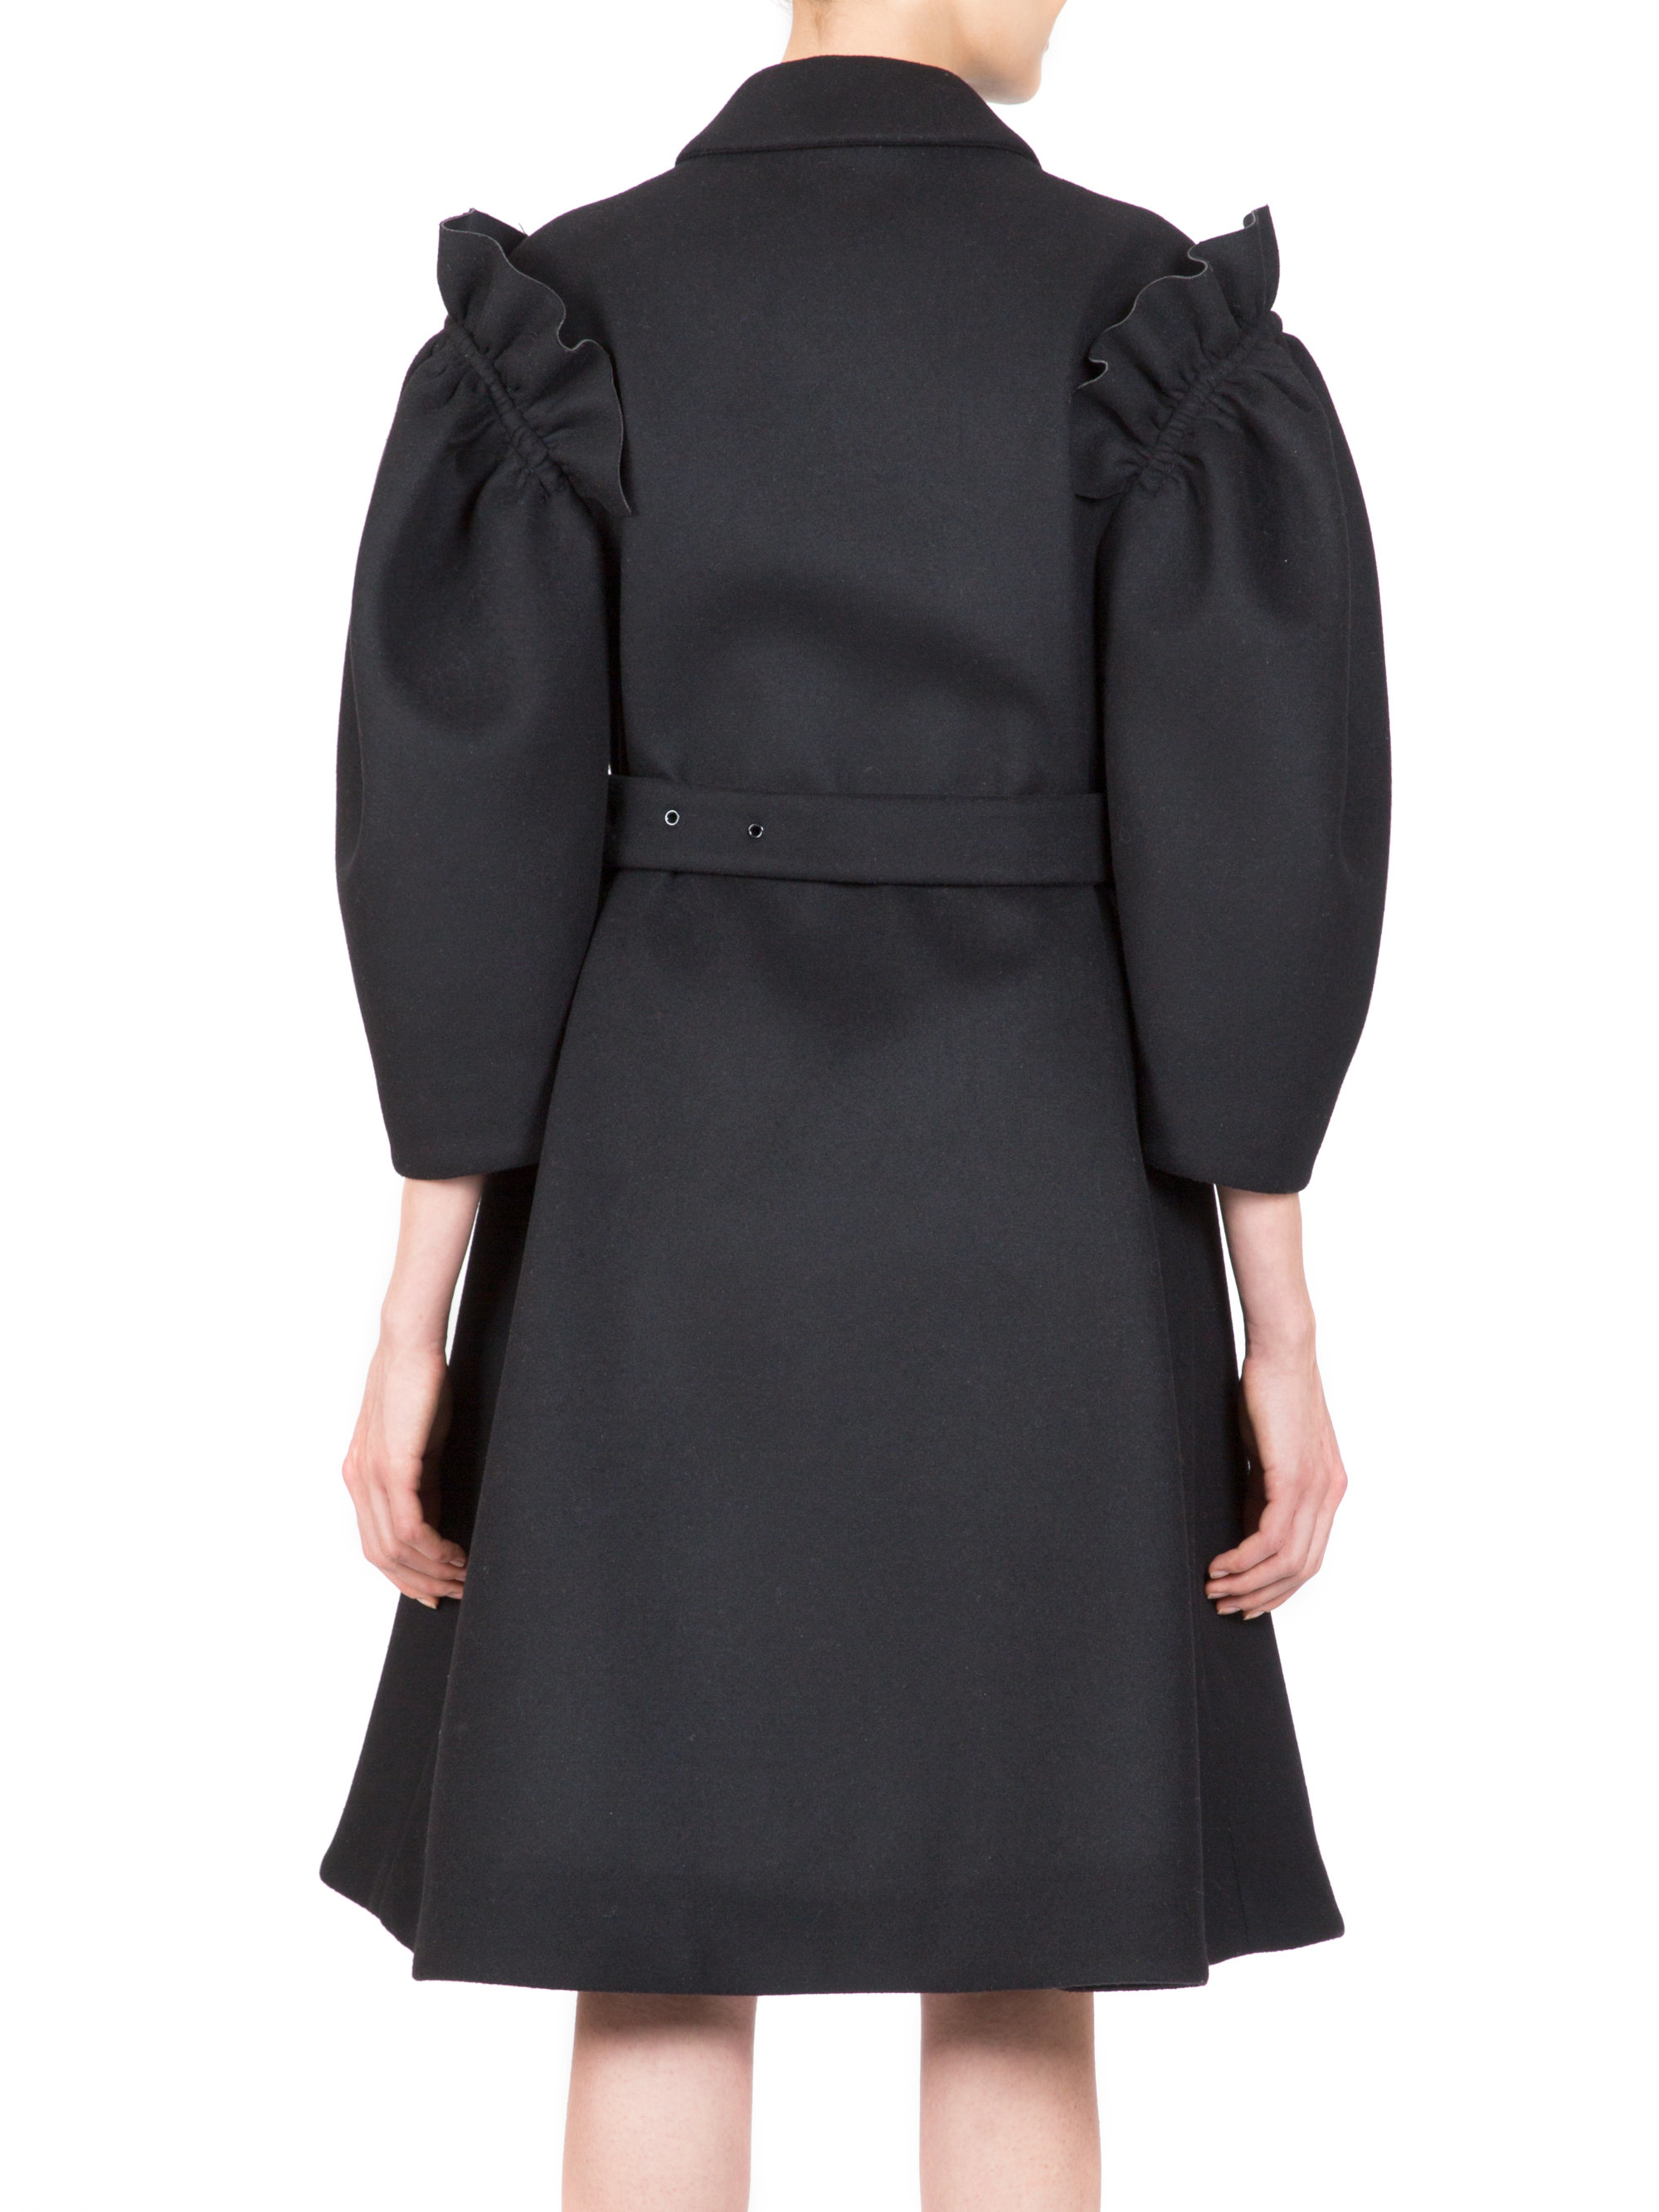 Simone Rocha Shoulder-ruffle Coat in Black - Lyst